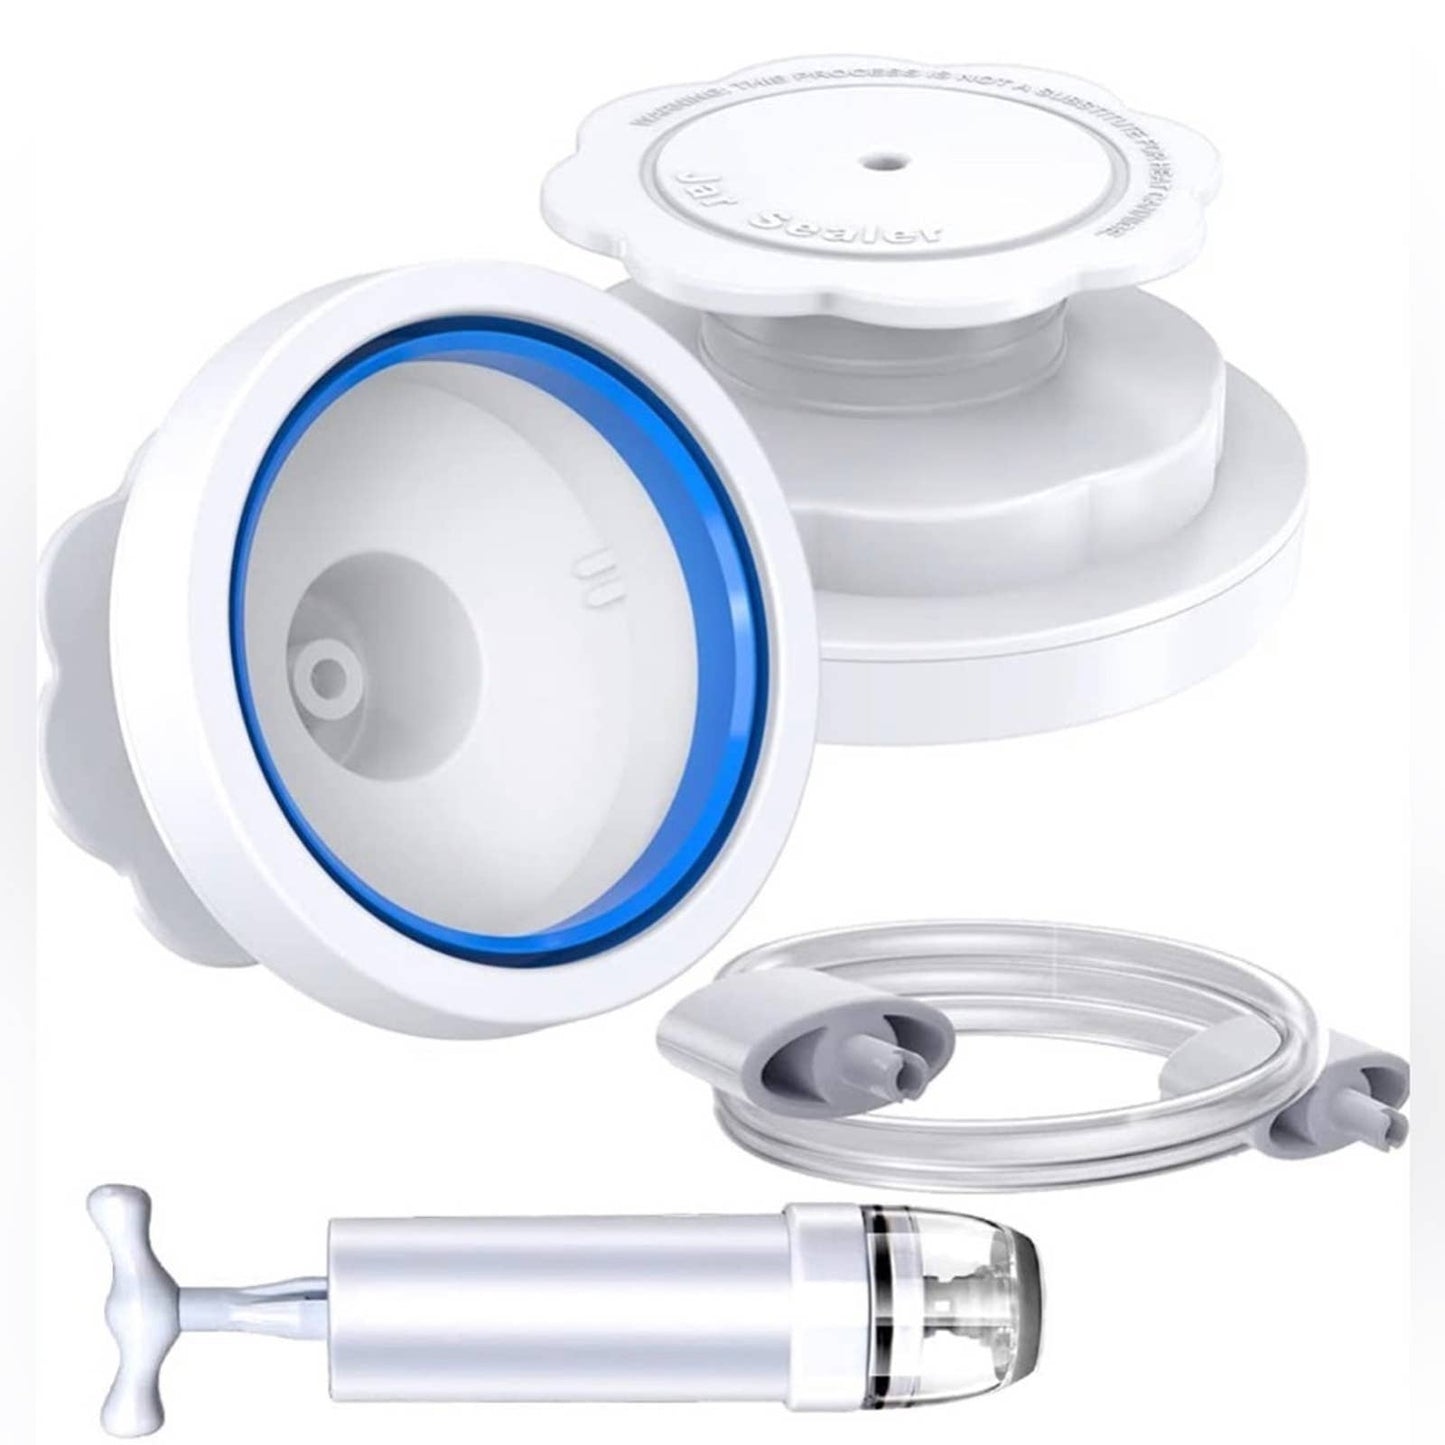 Atecess Jar Sealer Compatiable for FoodSaver Vacuum Sealer (TC-White+Pump)